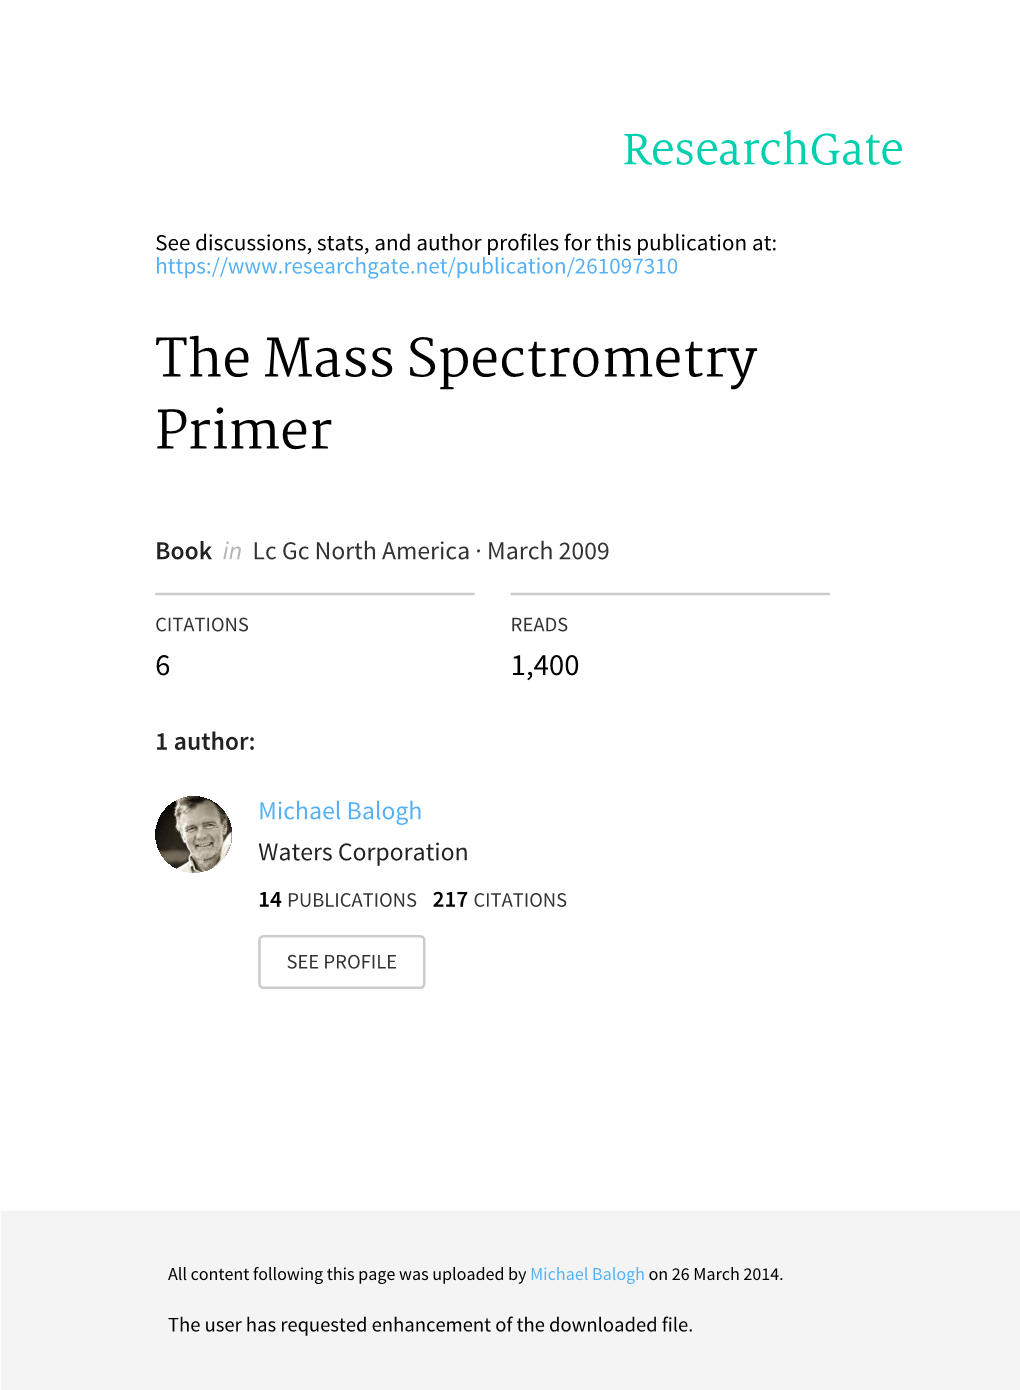 The Mass Spectrometry Primer